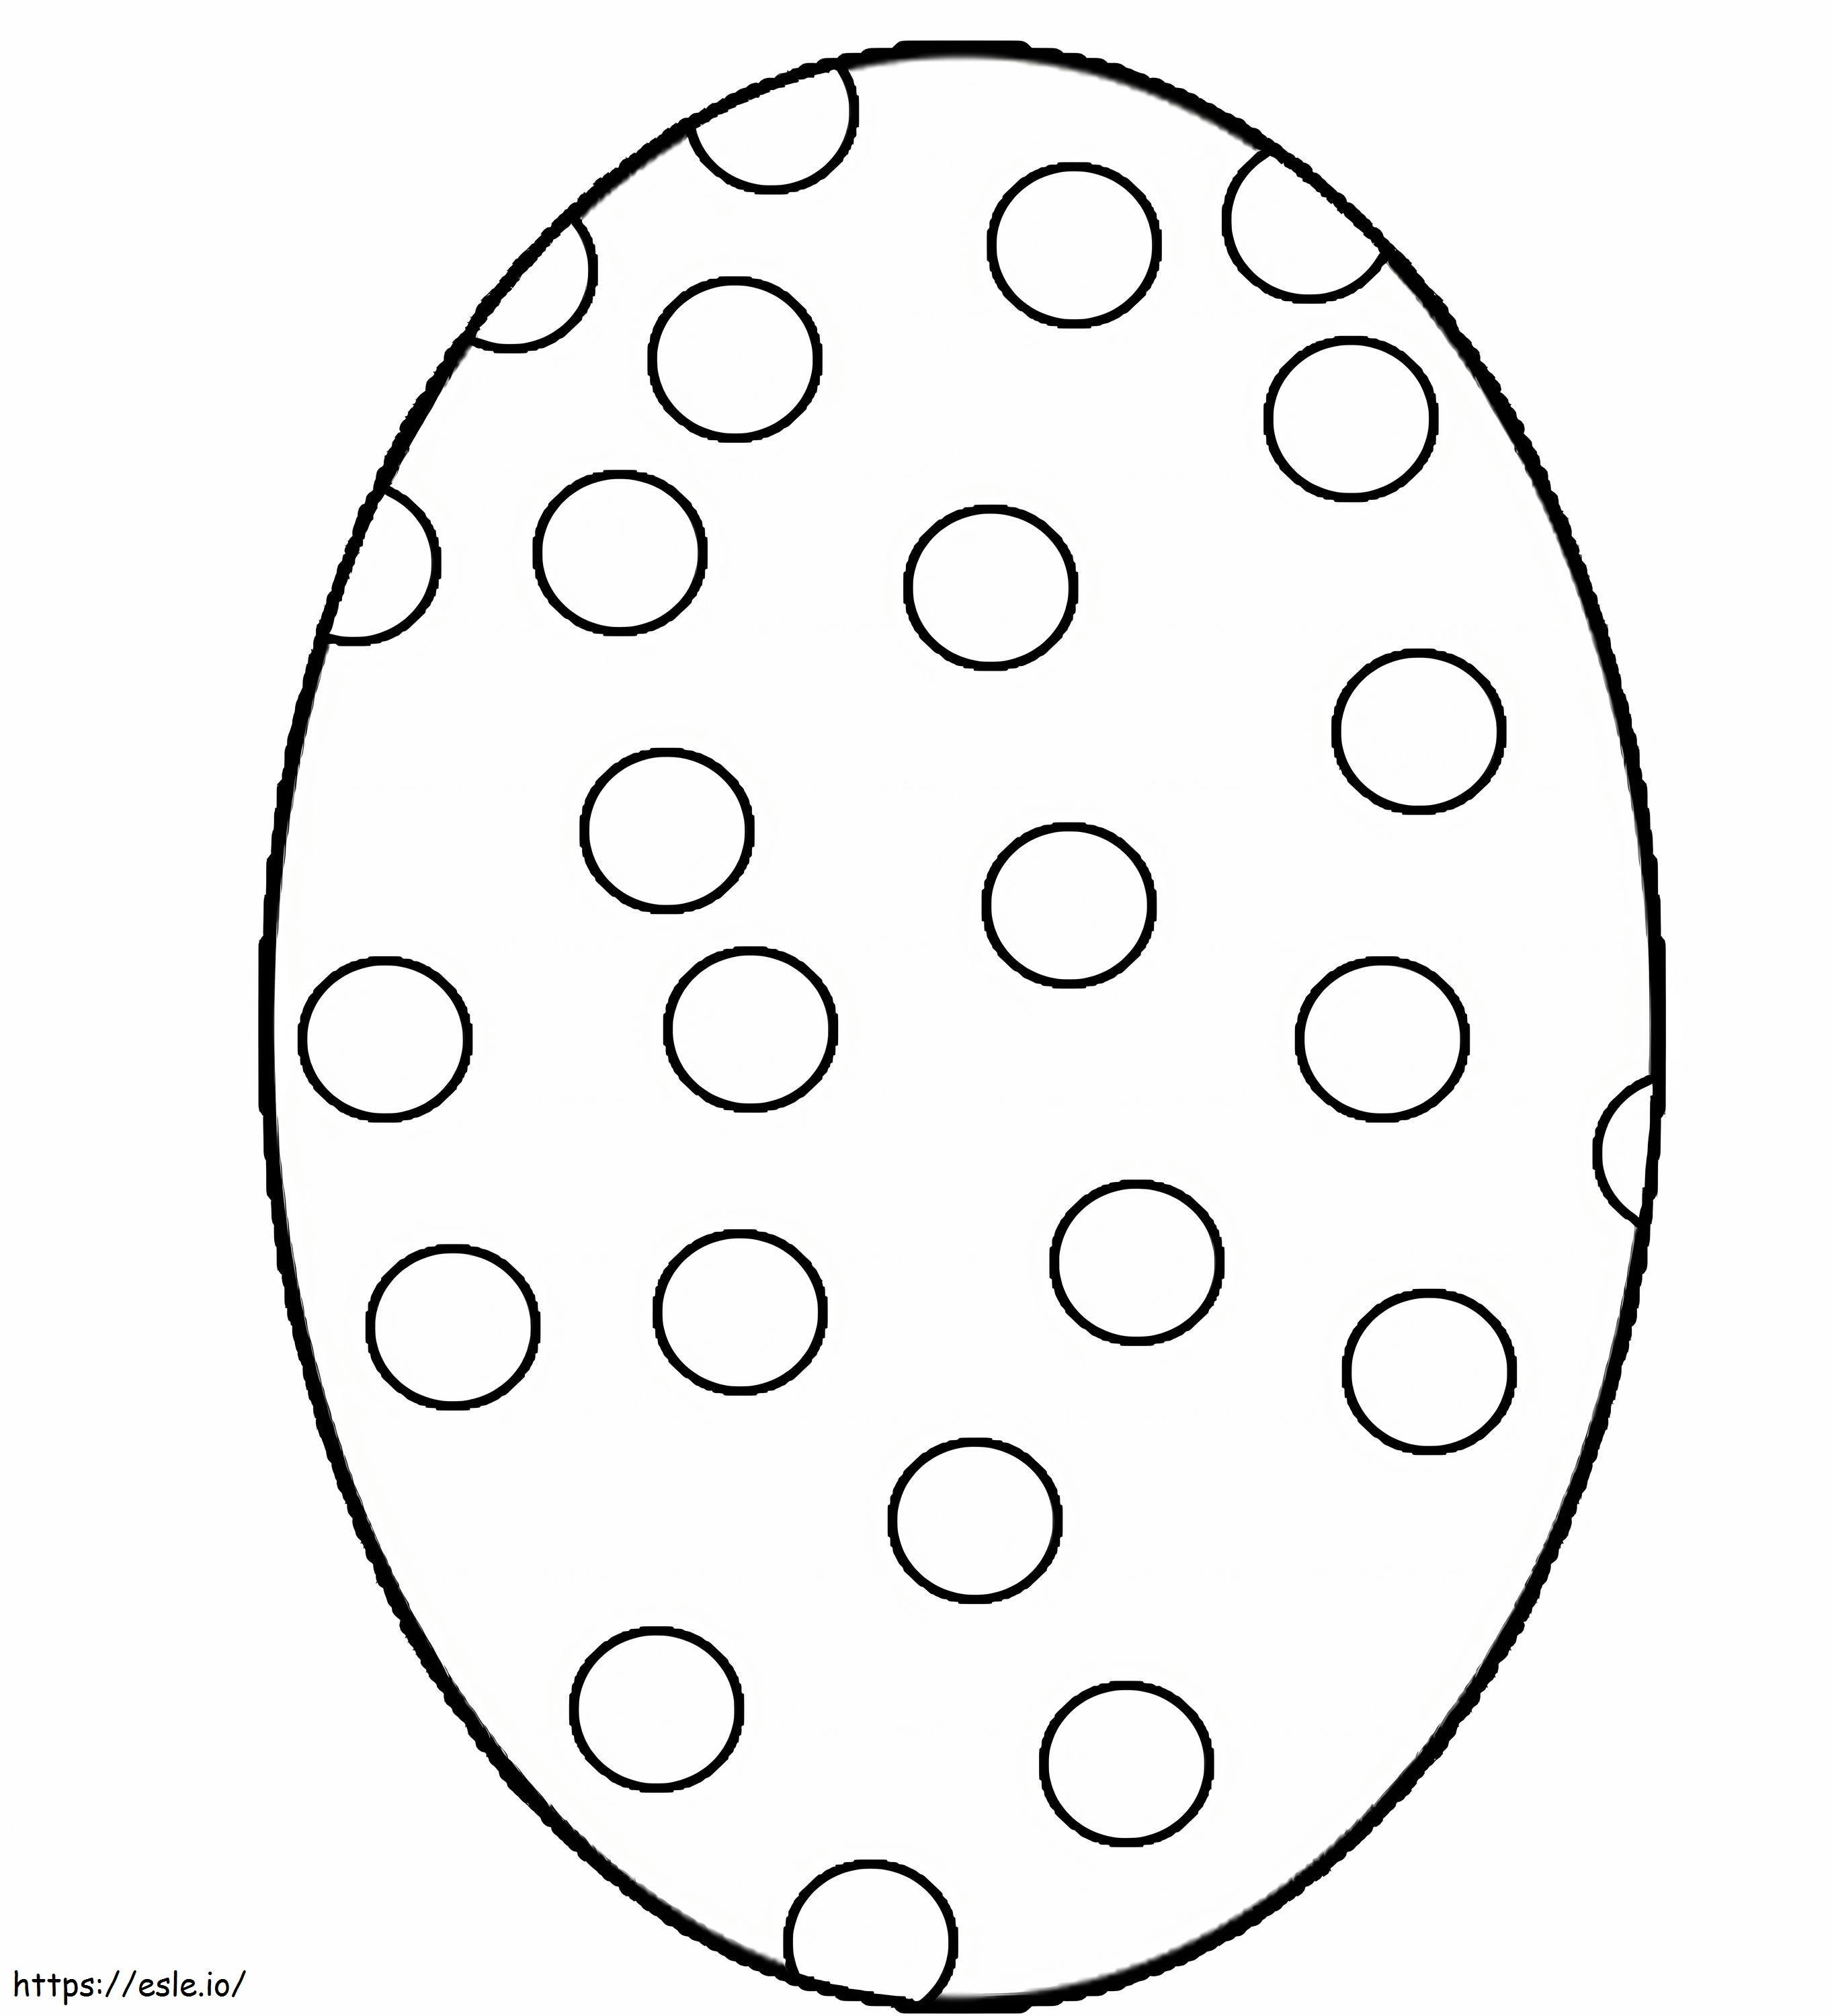 Huevo perfecto escamado para colorear